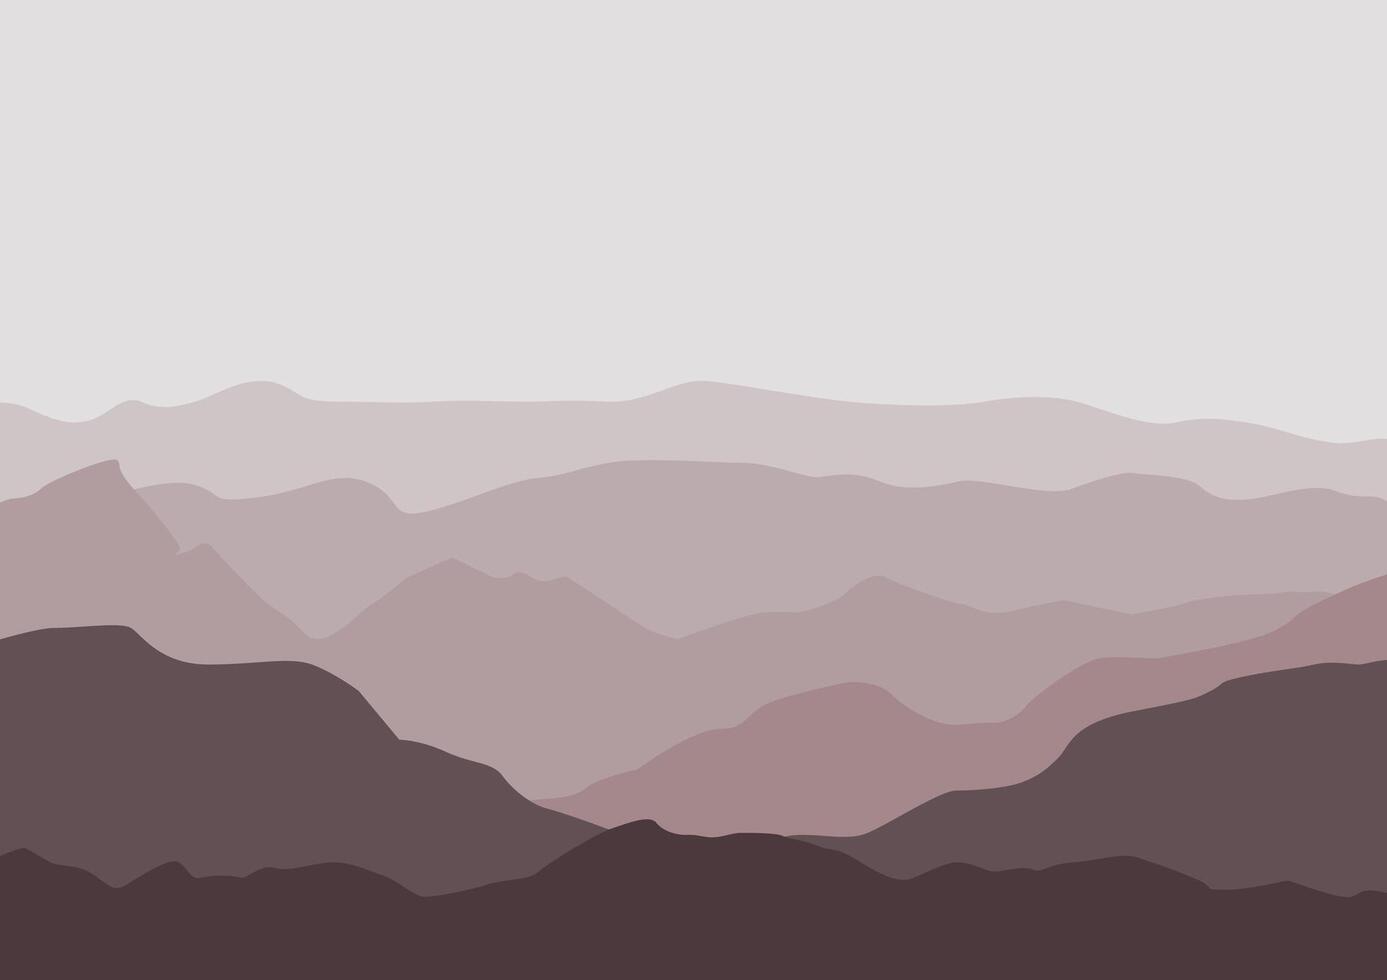 montañas paisaje panorama. ilustración en plano estilo. vector